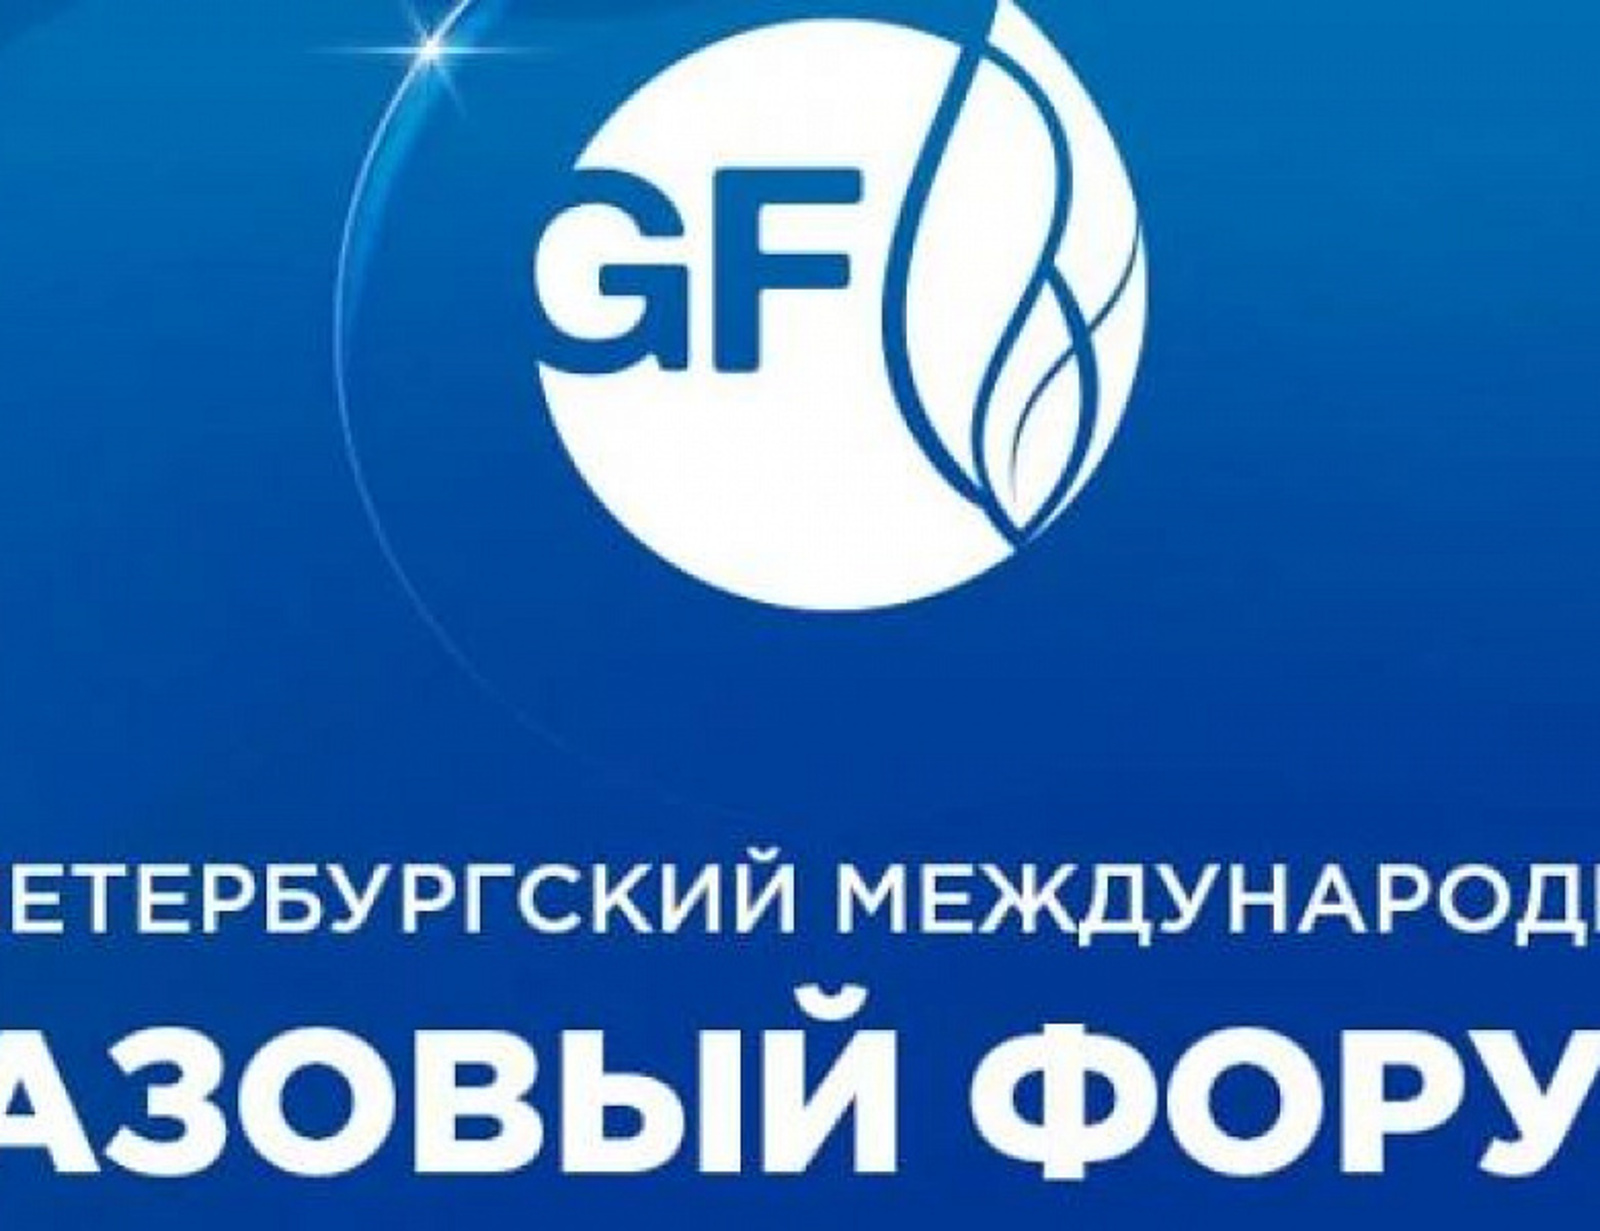 Башкортостан на ПМГФ-2022 планирует подписать крупные соглашения с ПАО «Газпром»